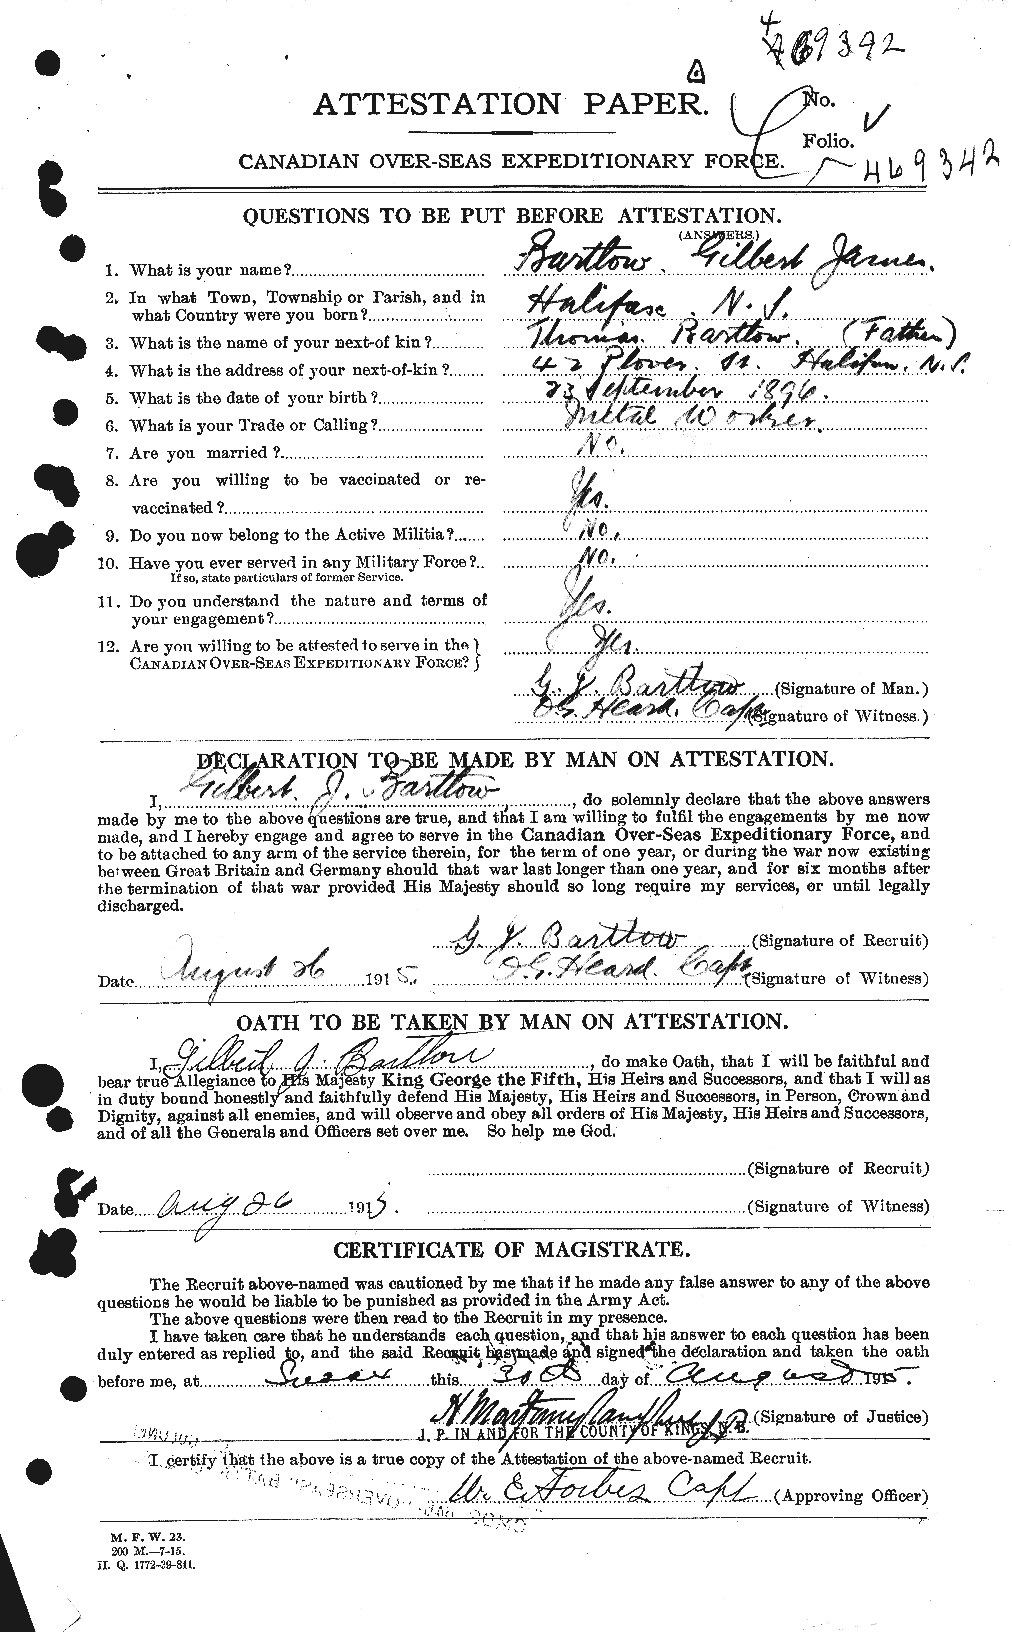 Dossiers du Personnel de la Première Guerre mondiale - CEC 234367a